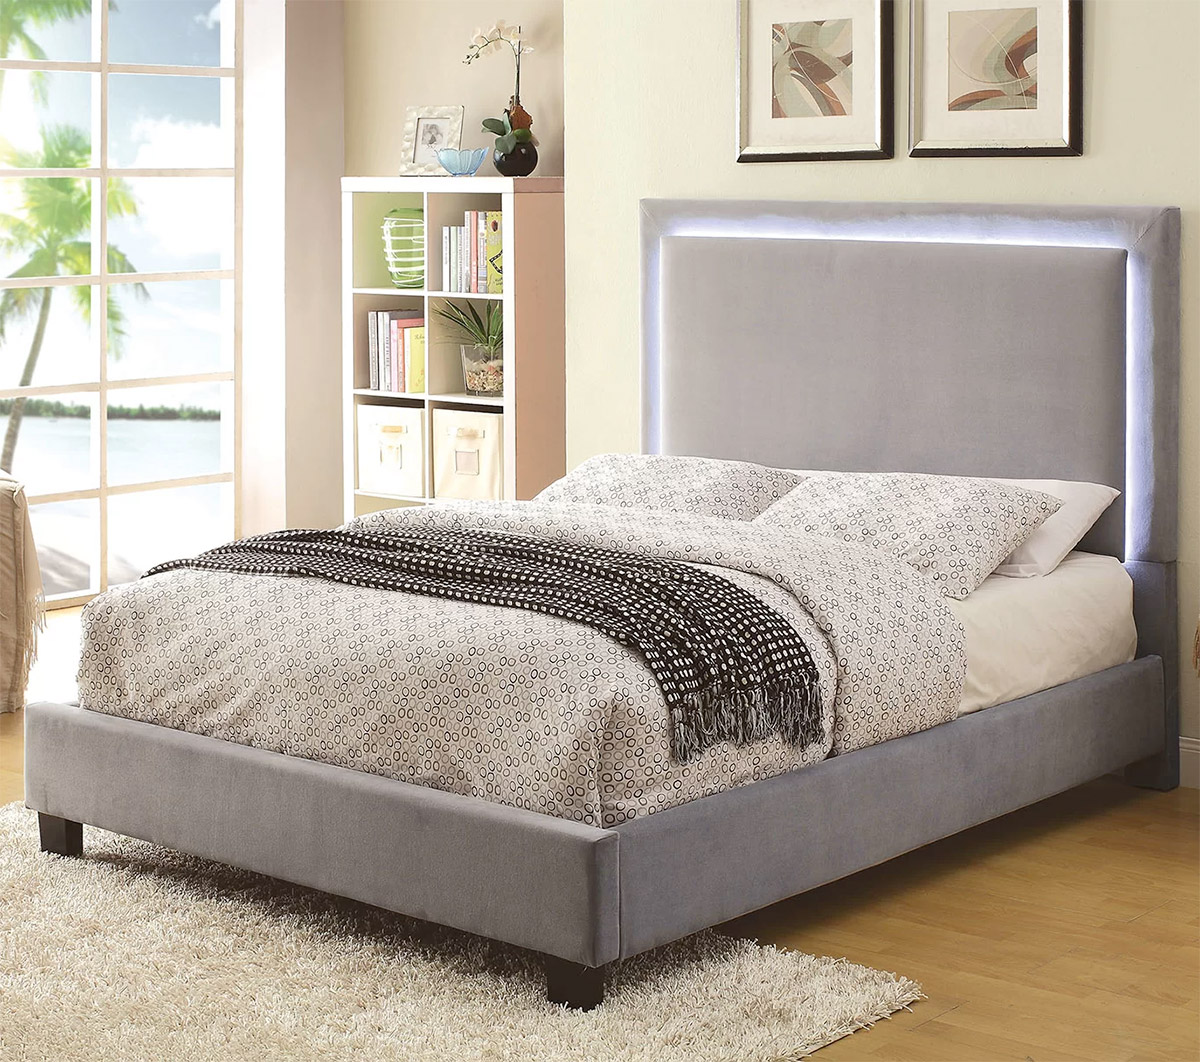 15 thiết kế giường ngủ sang chảnh lại thoải mái khiến bạn không muốn rời phòng ngủ chút nào - Ảnh 15.